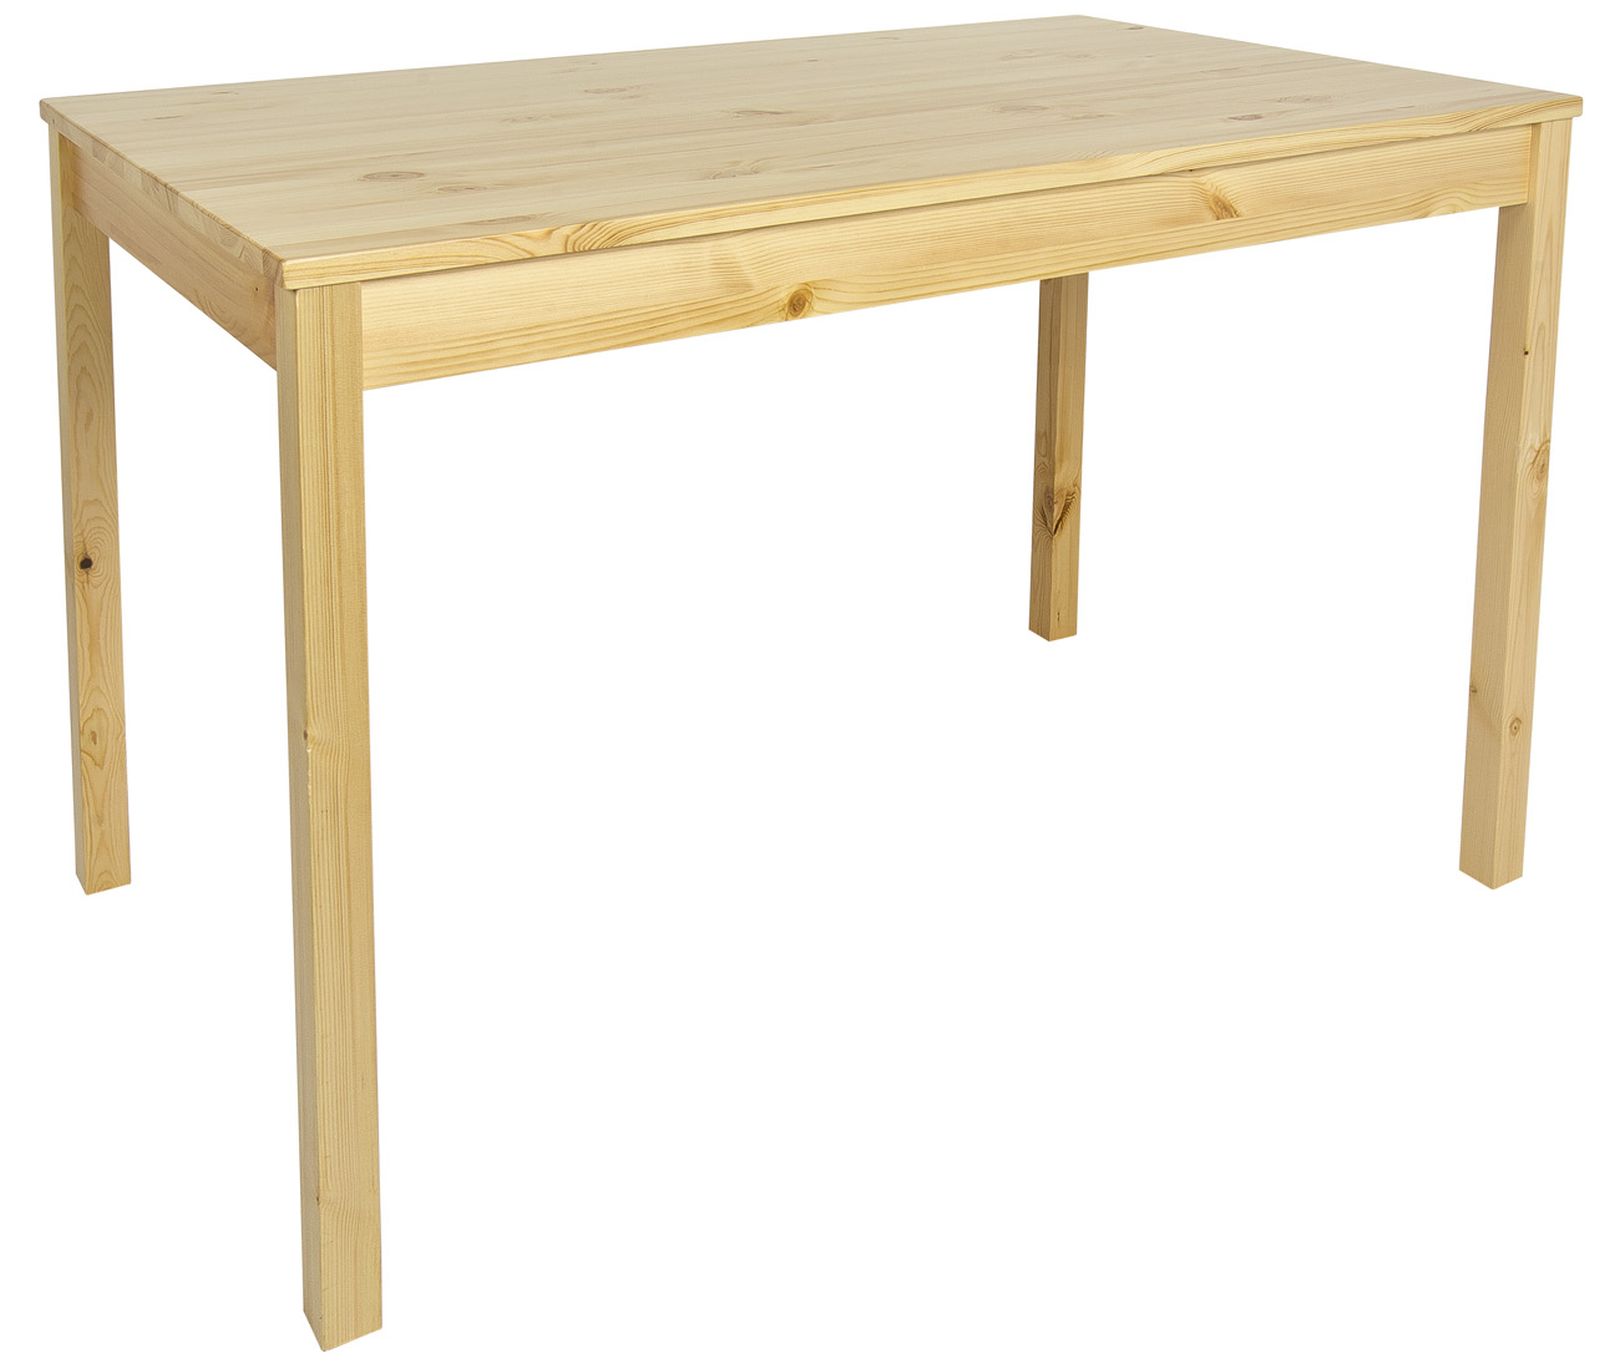 Holztisch Mit 4 Stuhlen Naturliche Holzfarbe Natural Pine Leomark De